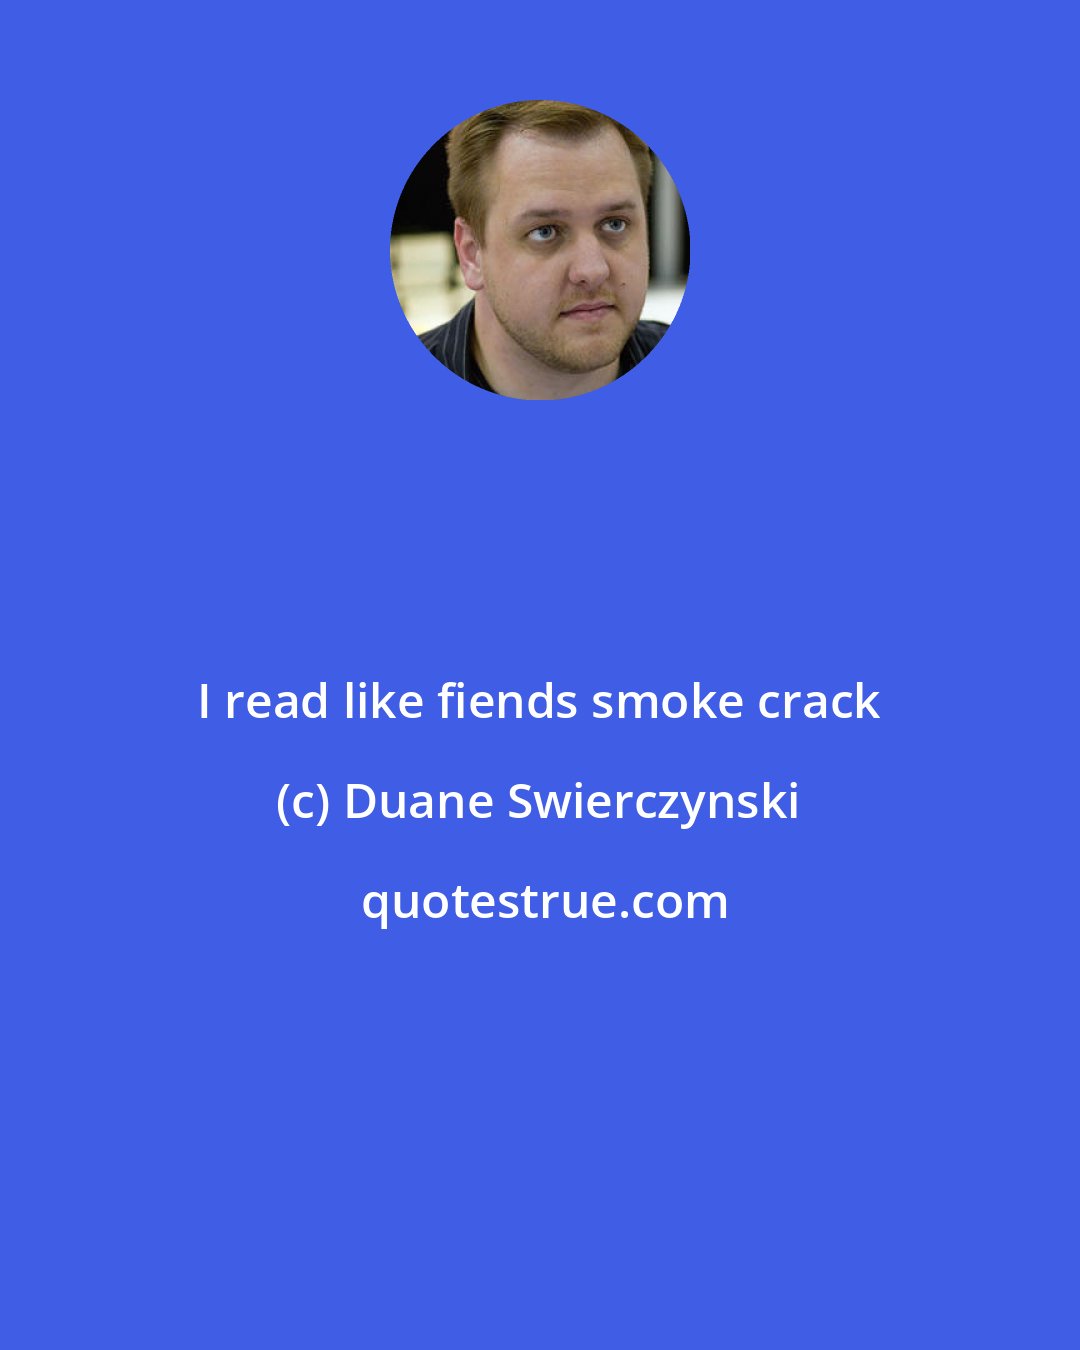 Duane Swierczynski: I read like fiends smoke crack